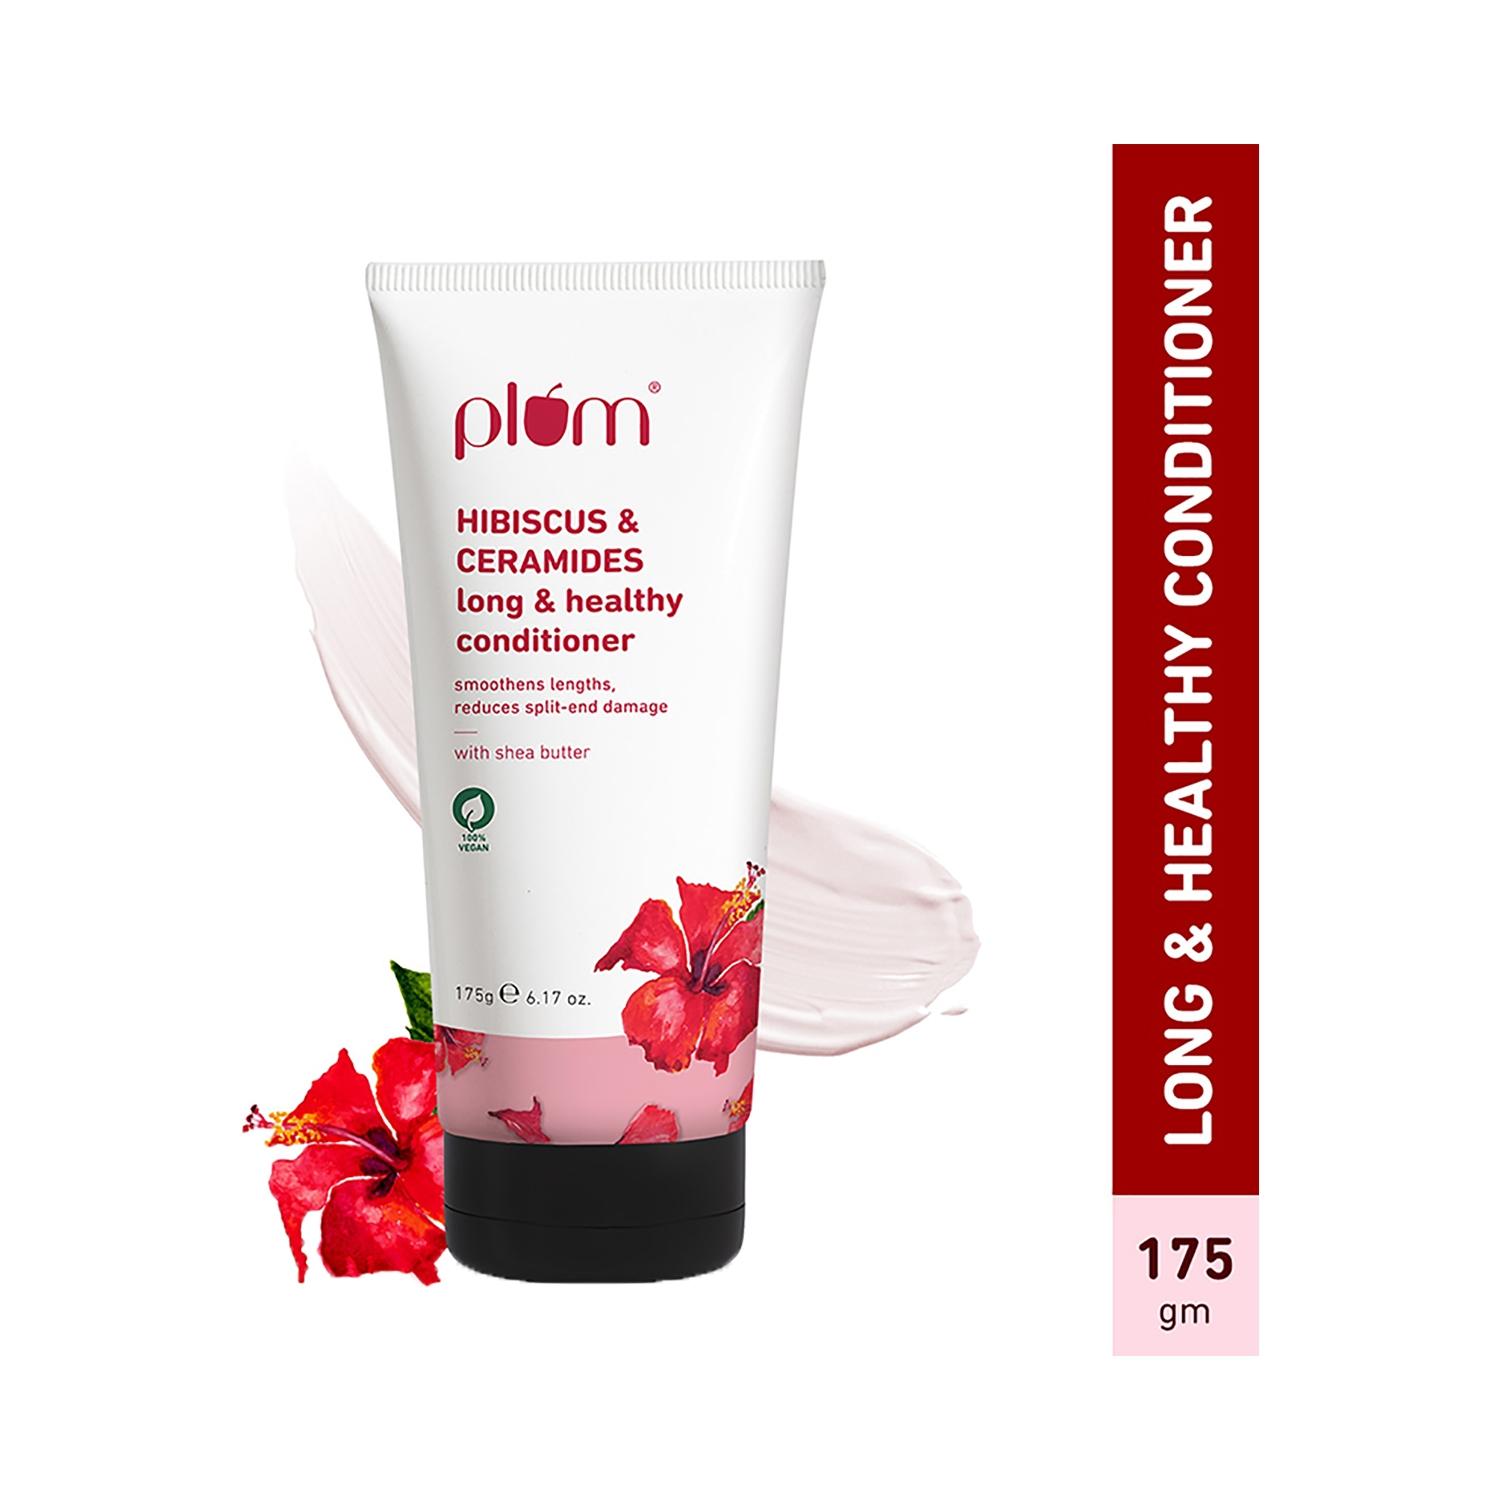 plum hibiscus & ceramides long & healthy conditioner (175g)